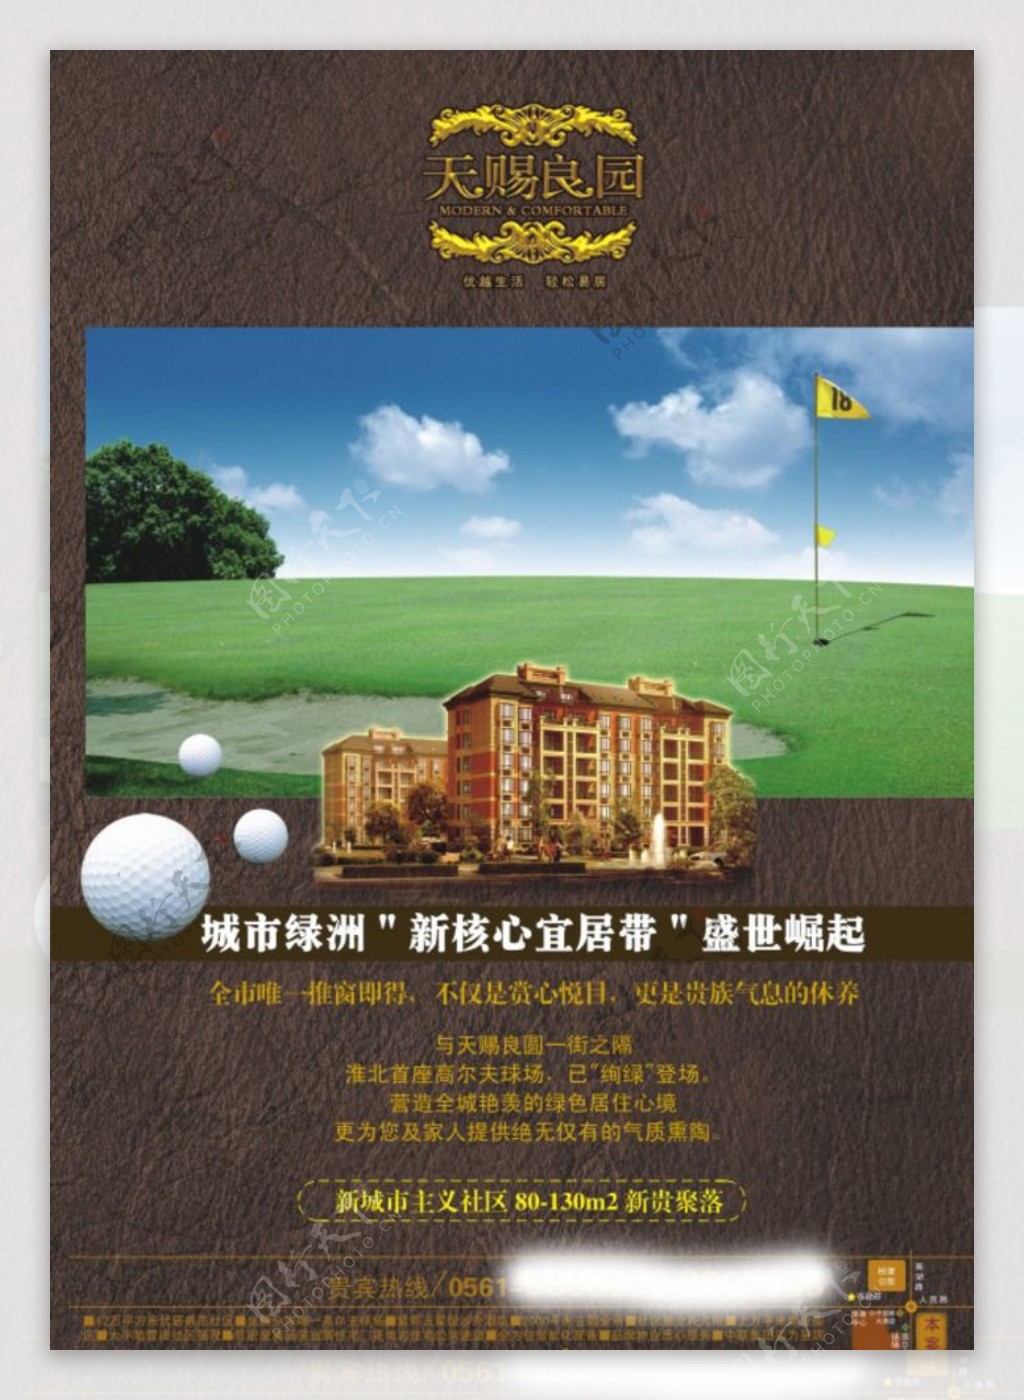 高尔夫球场地产广告